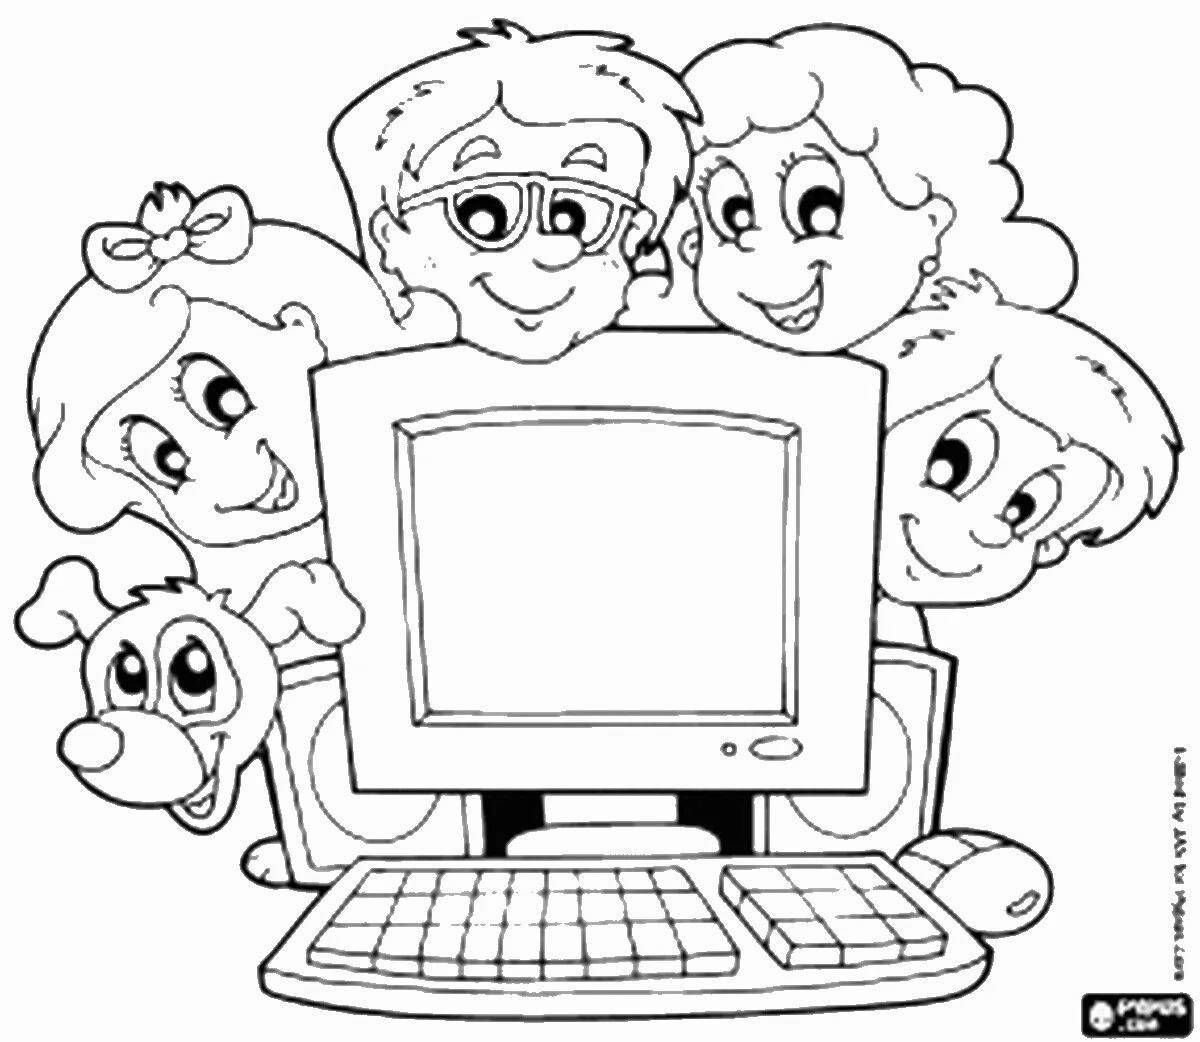 Children's Internet Safety #16